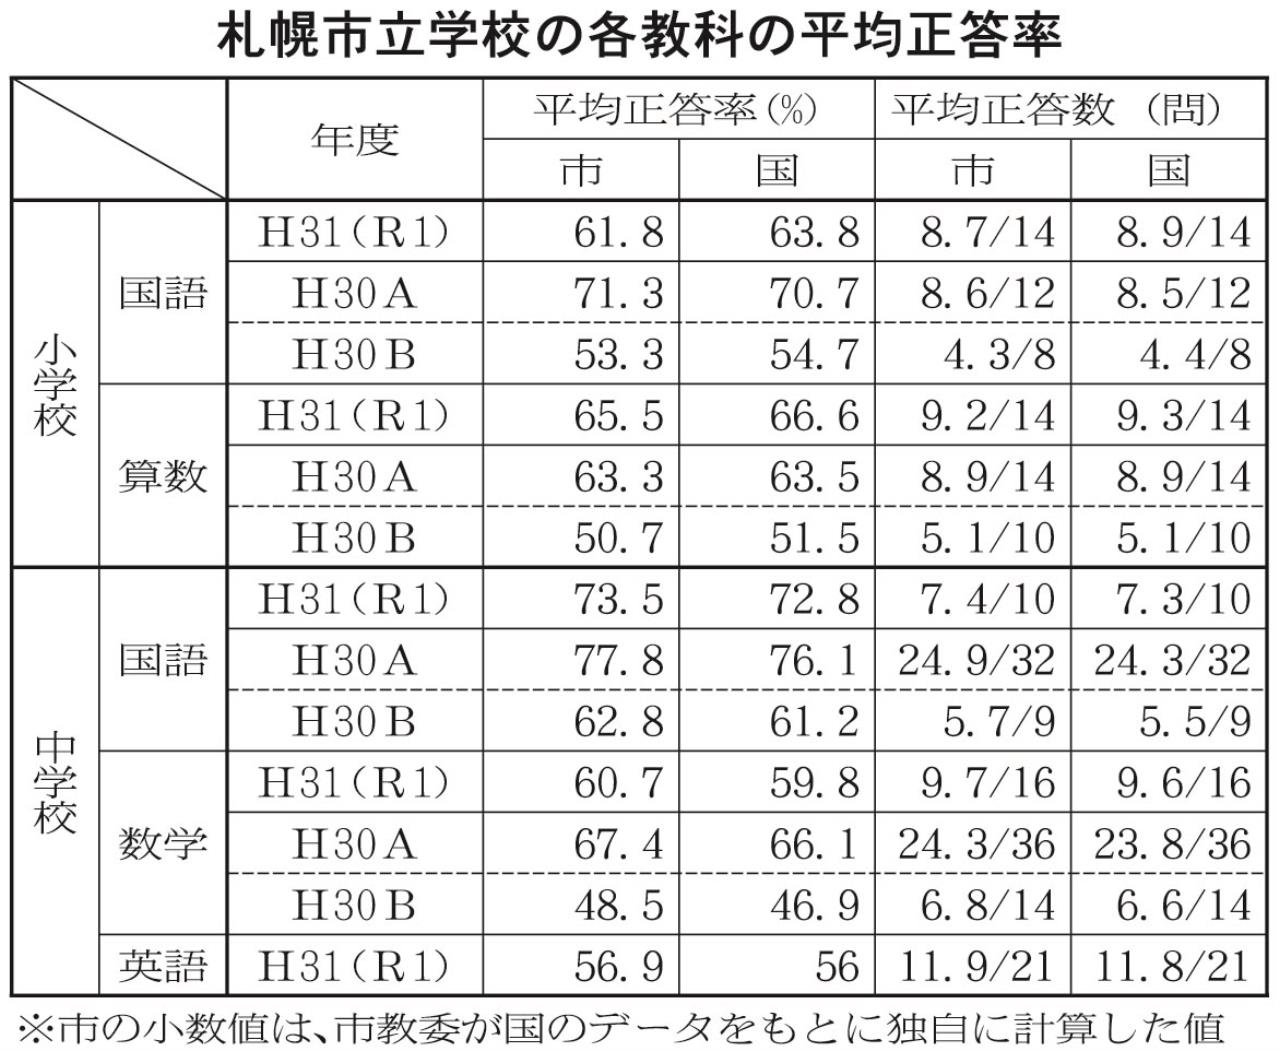 札幌市立学校の各教科の平均正答率